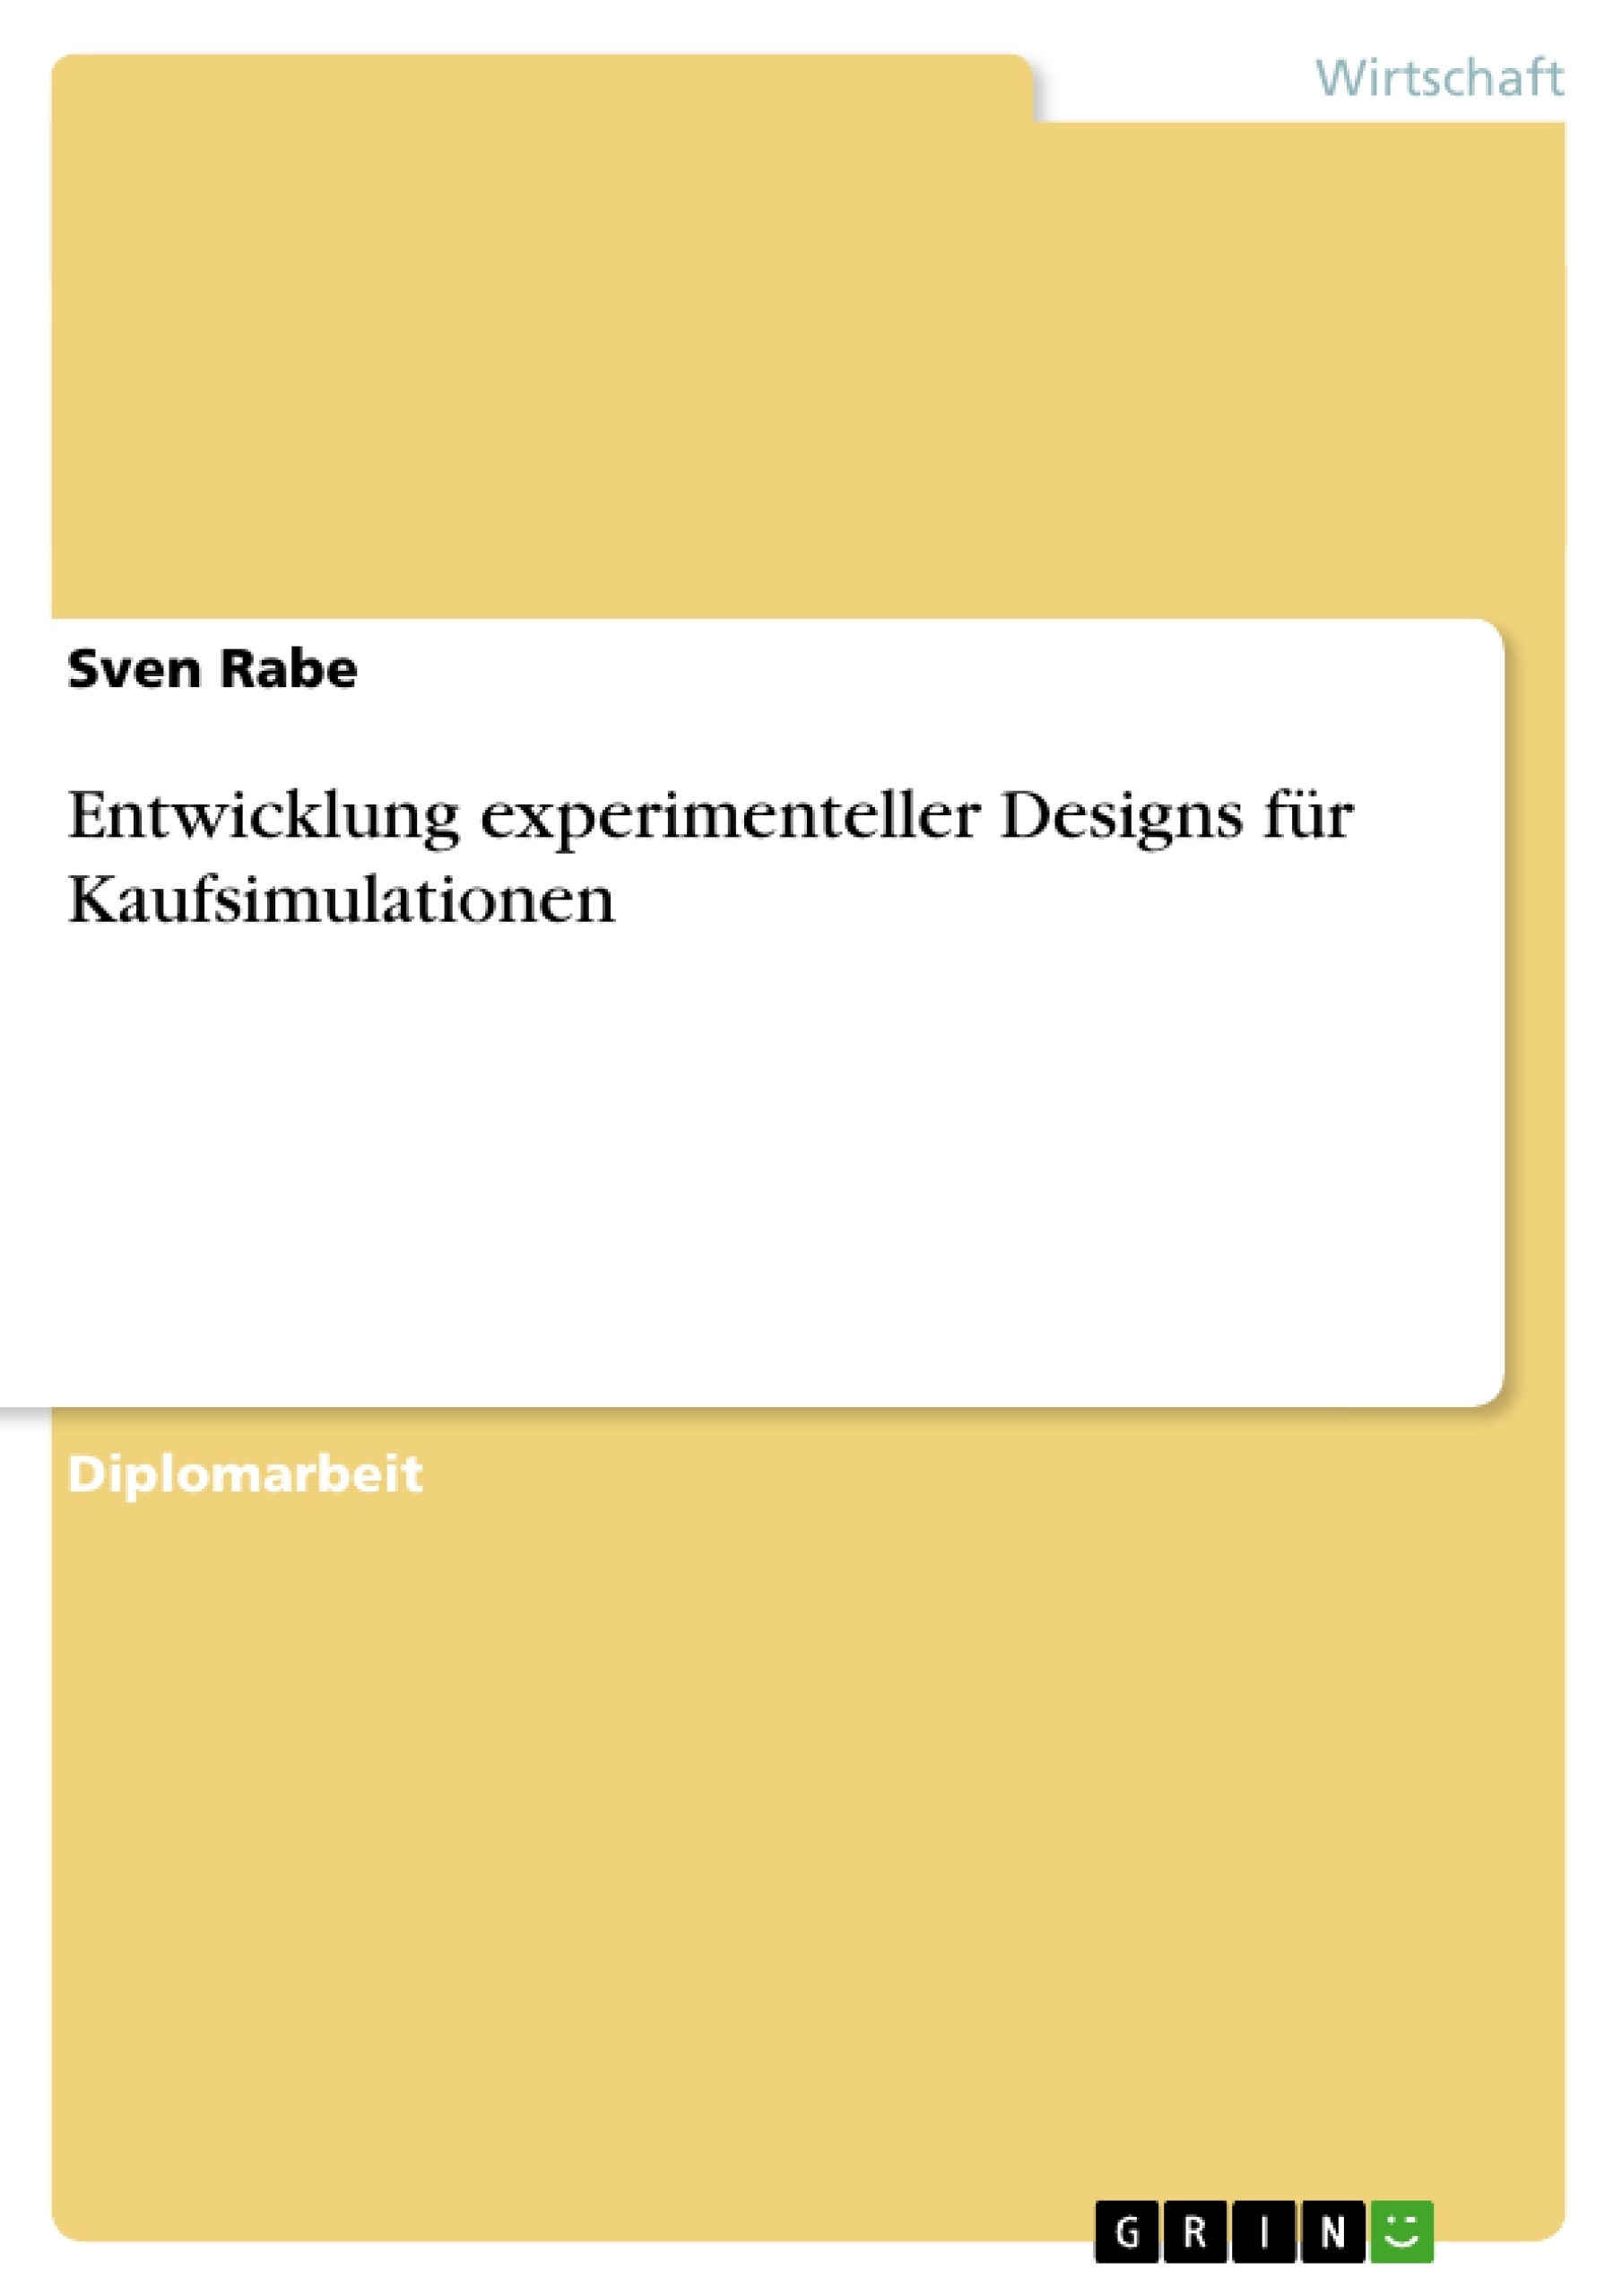 Título: Entwicklung experimenteller Designs für Kaufsimulationen